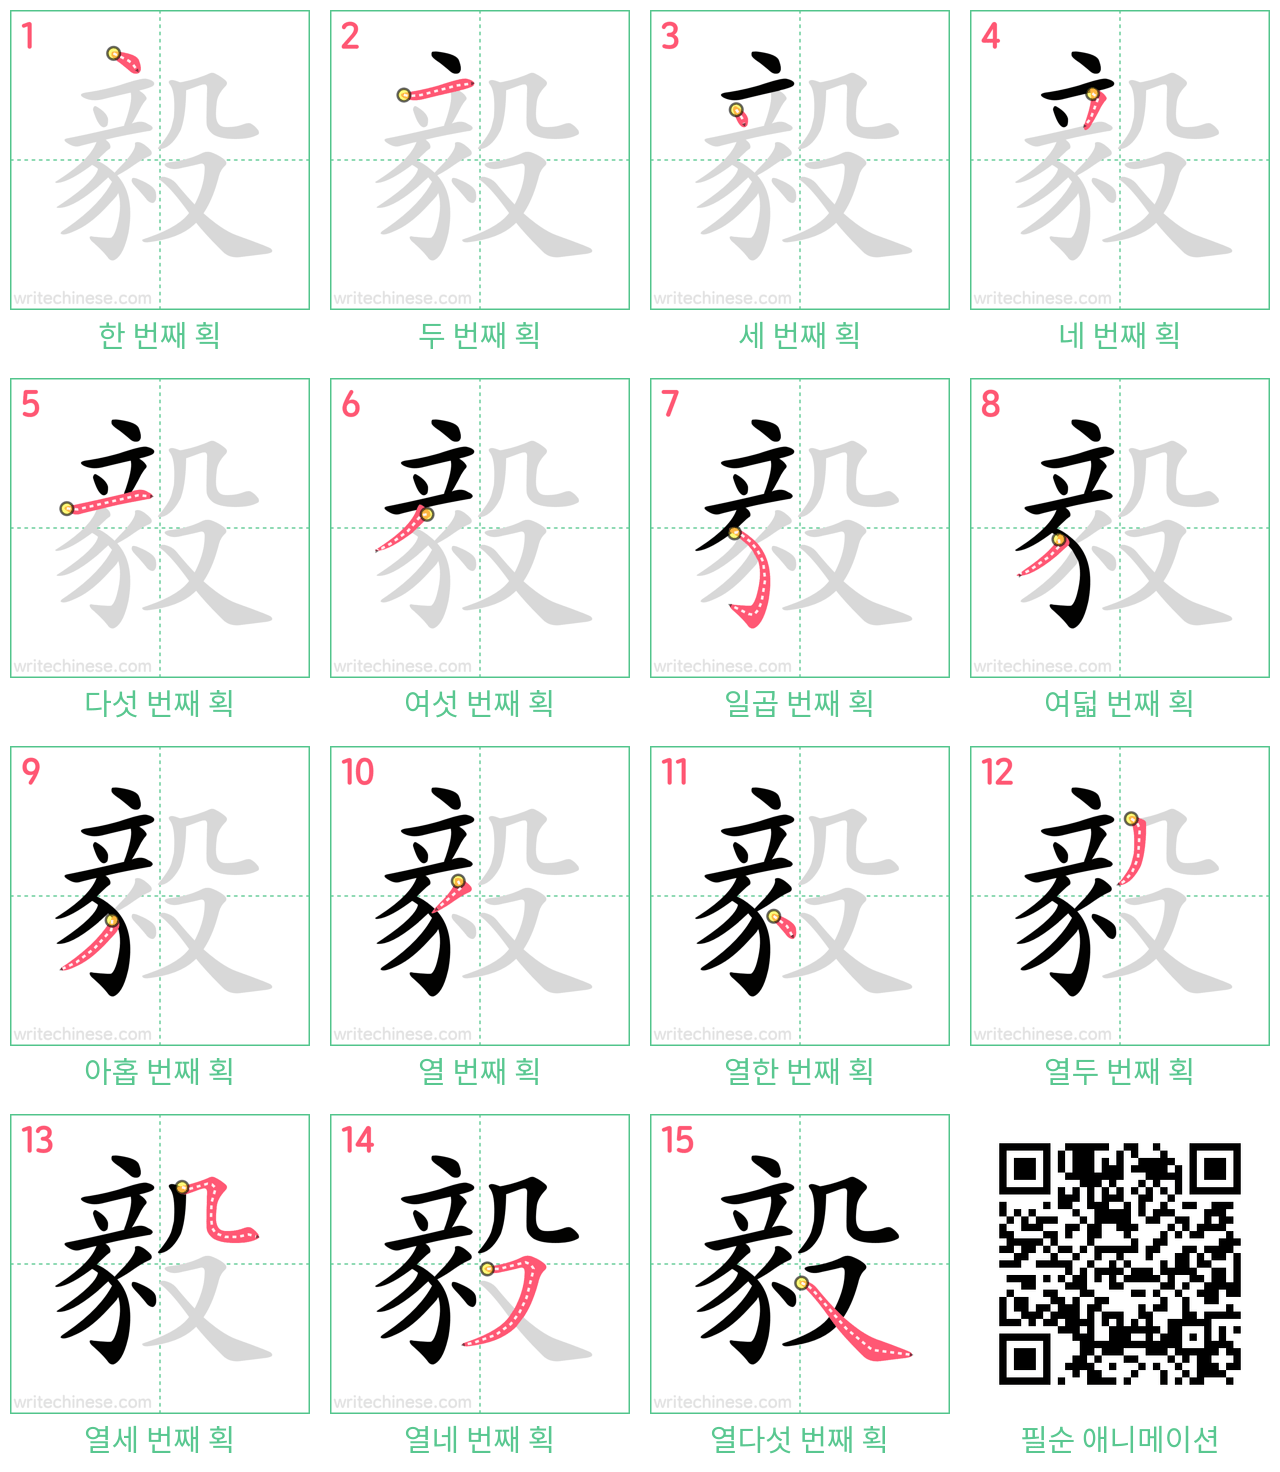 毅 step-by-step stroke order diagrams